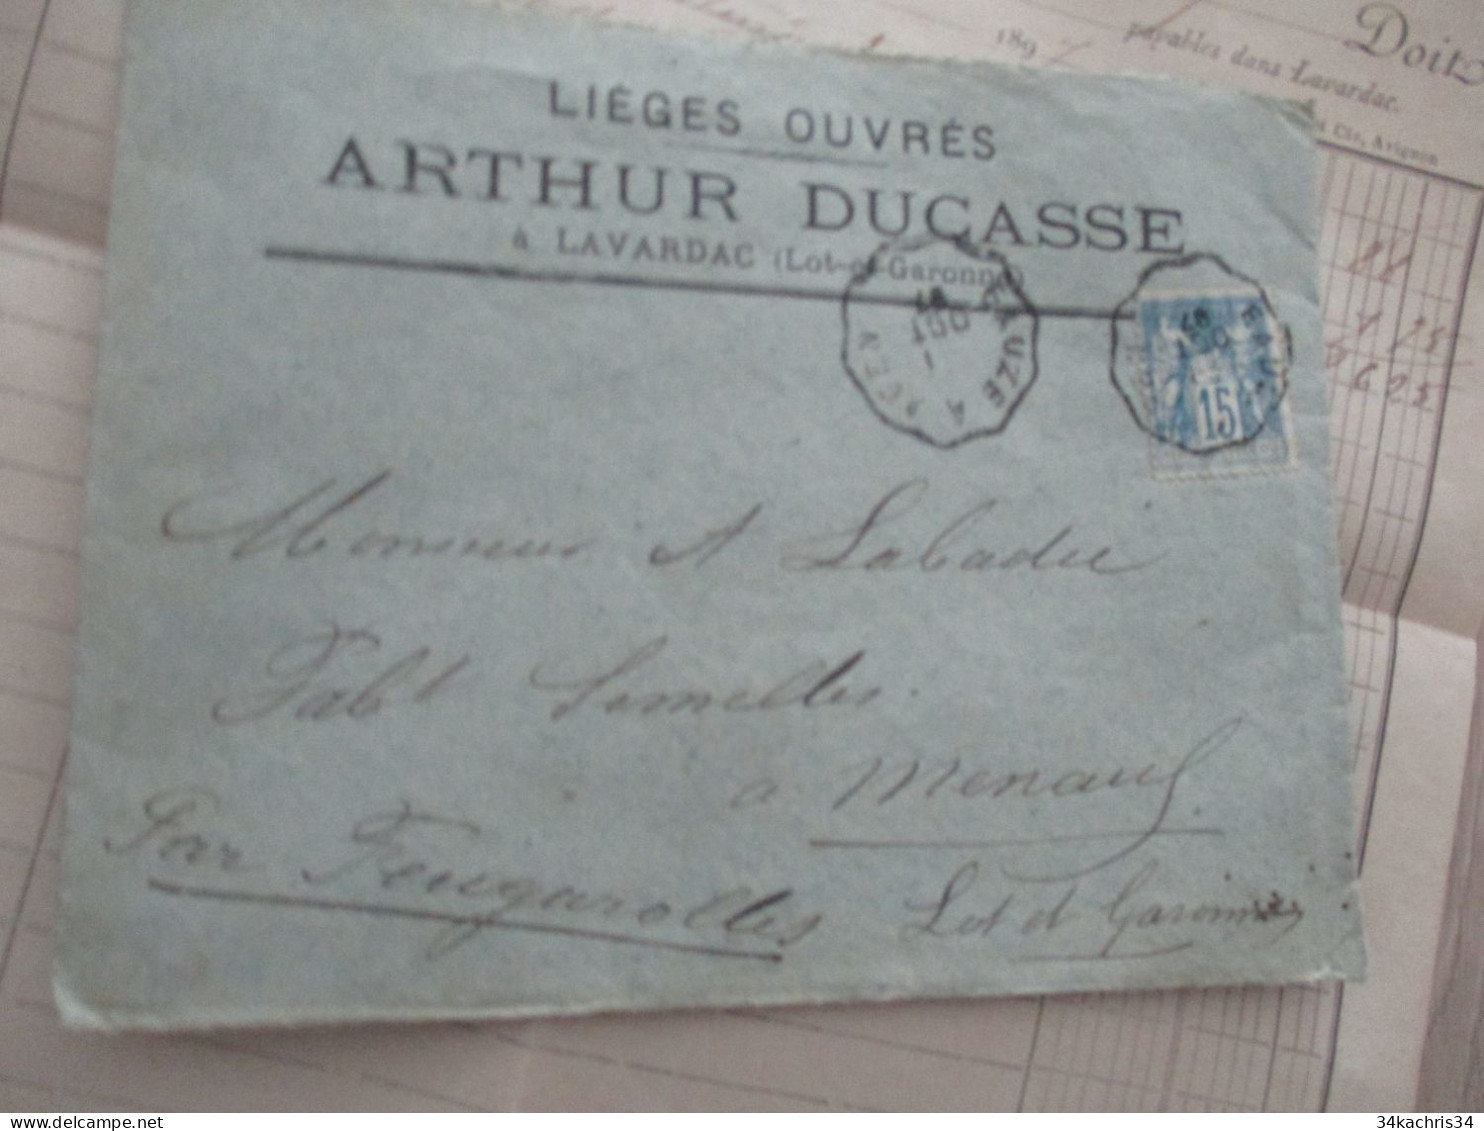 Facture + Enveloppe Pub Publicité 1897 Ducasse Arthur à Lavardac Lot Et Garonne Lièges Ouvrés - Landwirtschaft